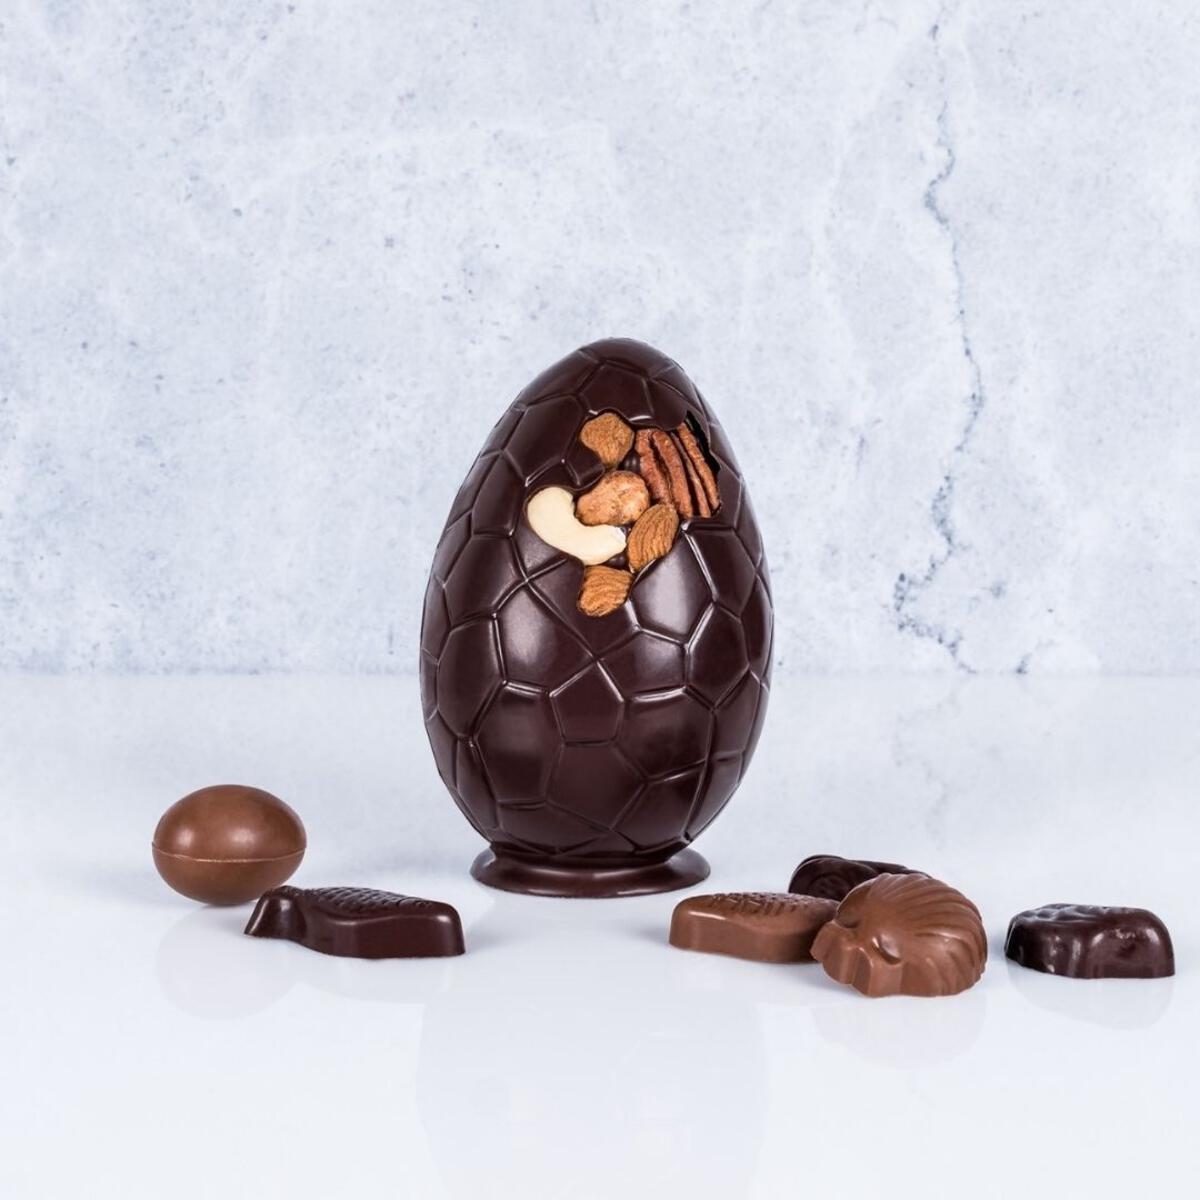 Moyen Oeuf mendiant Surprise de pâques 11,5 cm Chocolat Noir 64%   - Chocolat Boréal - Tablette de chocolat - PA032N